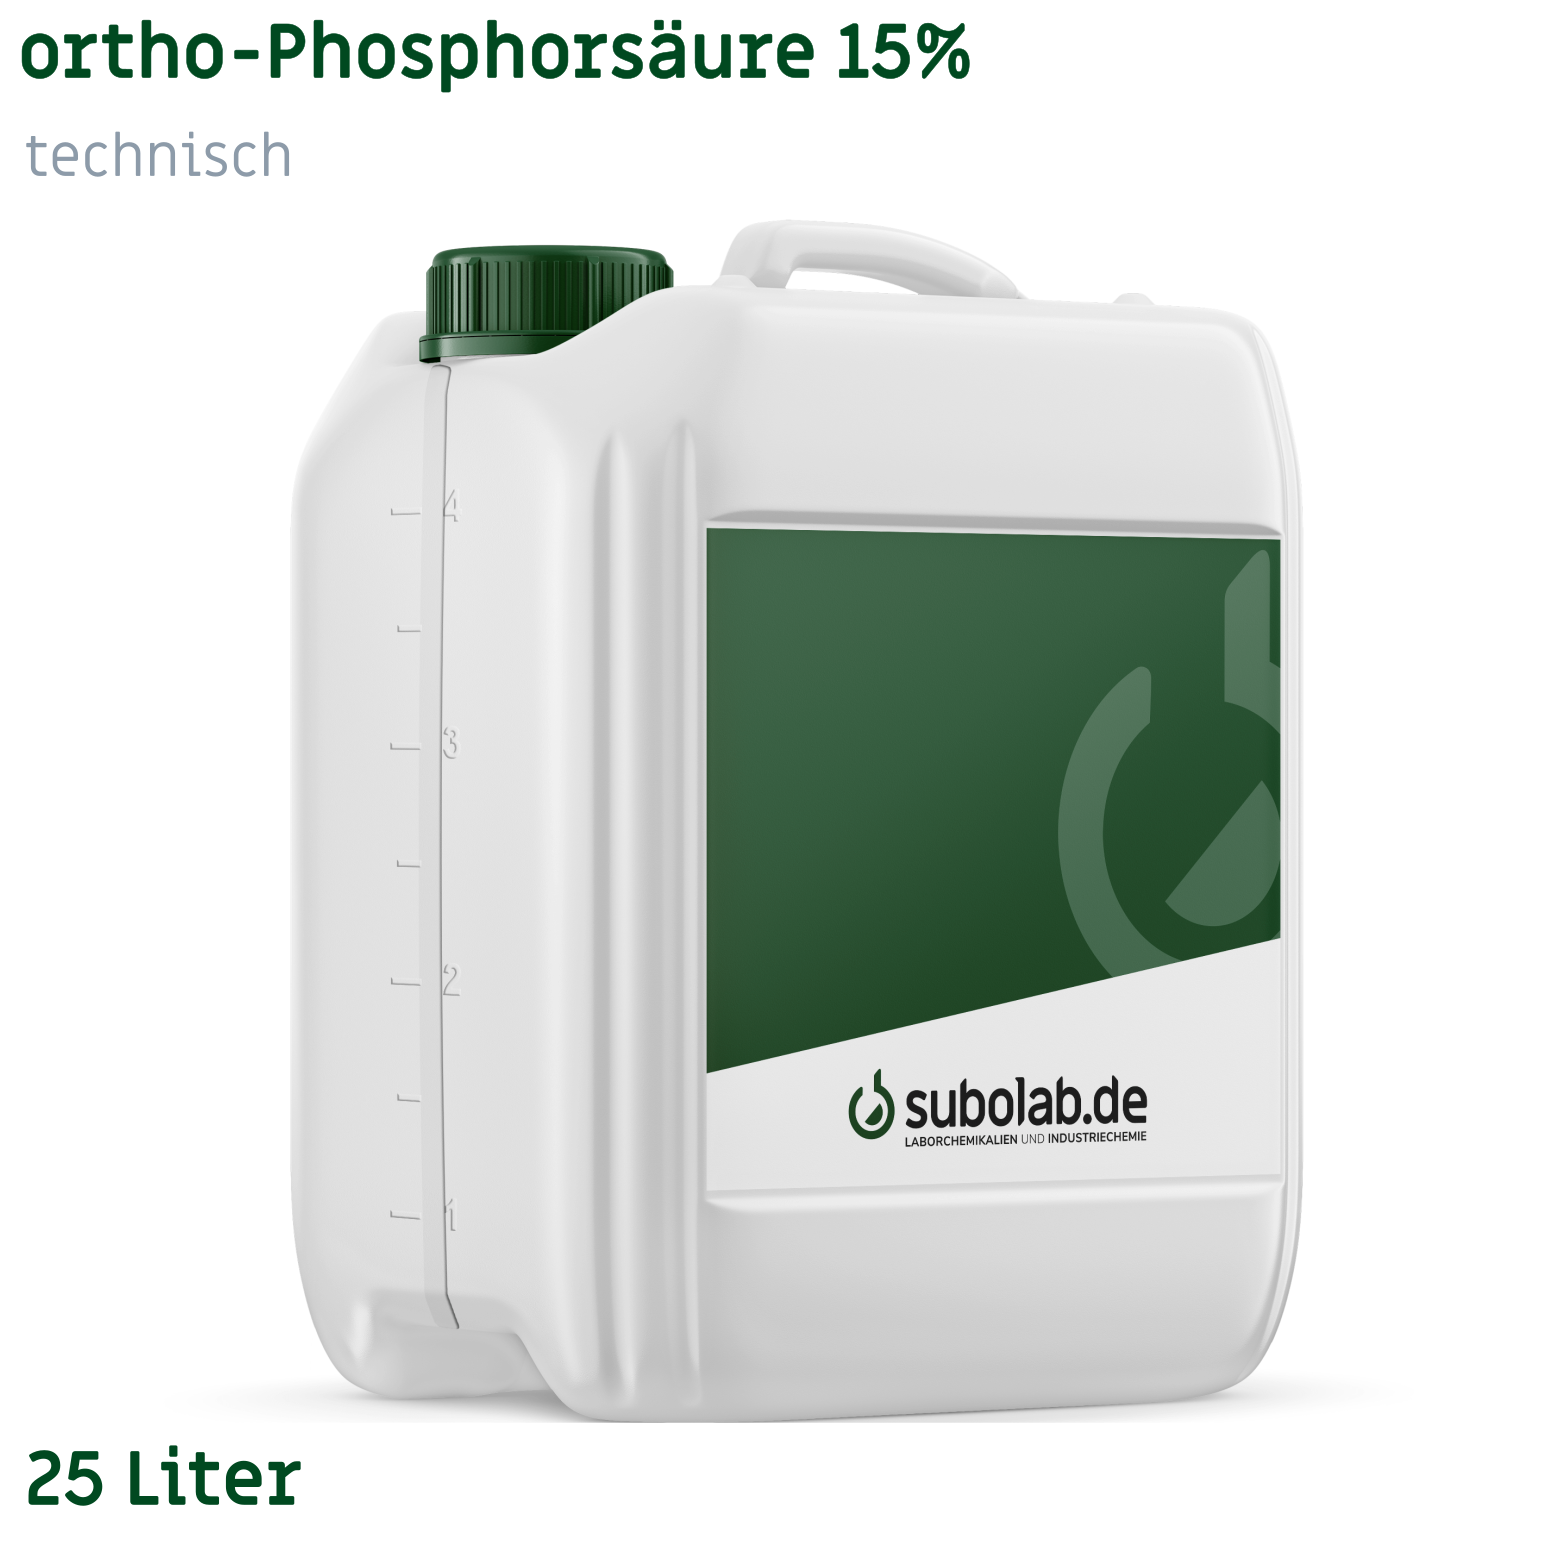 Bild von ortho-Phosphorsäure 15% technisch (25 Liter)